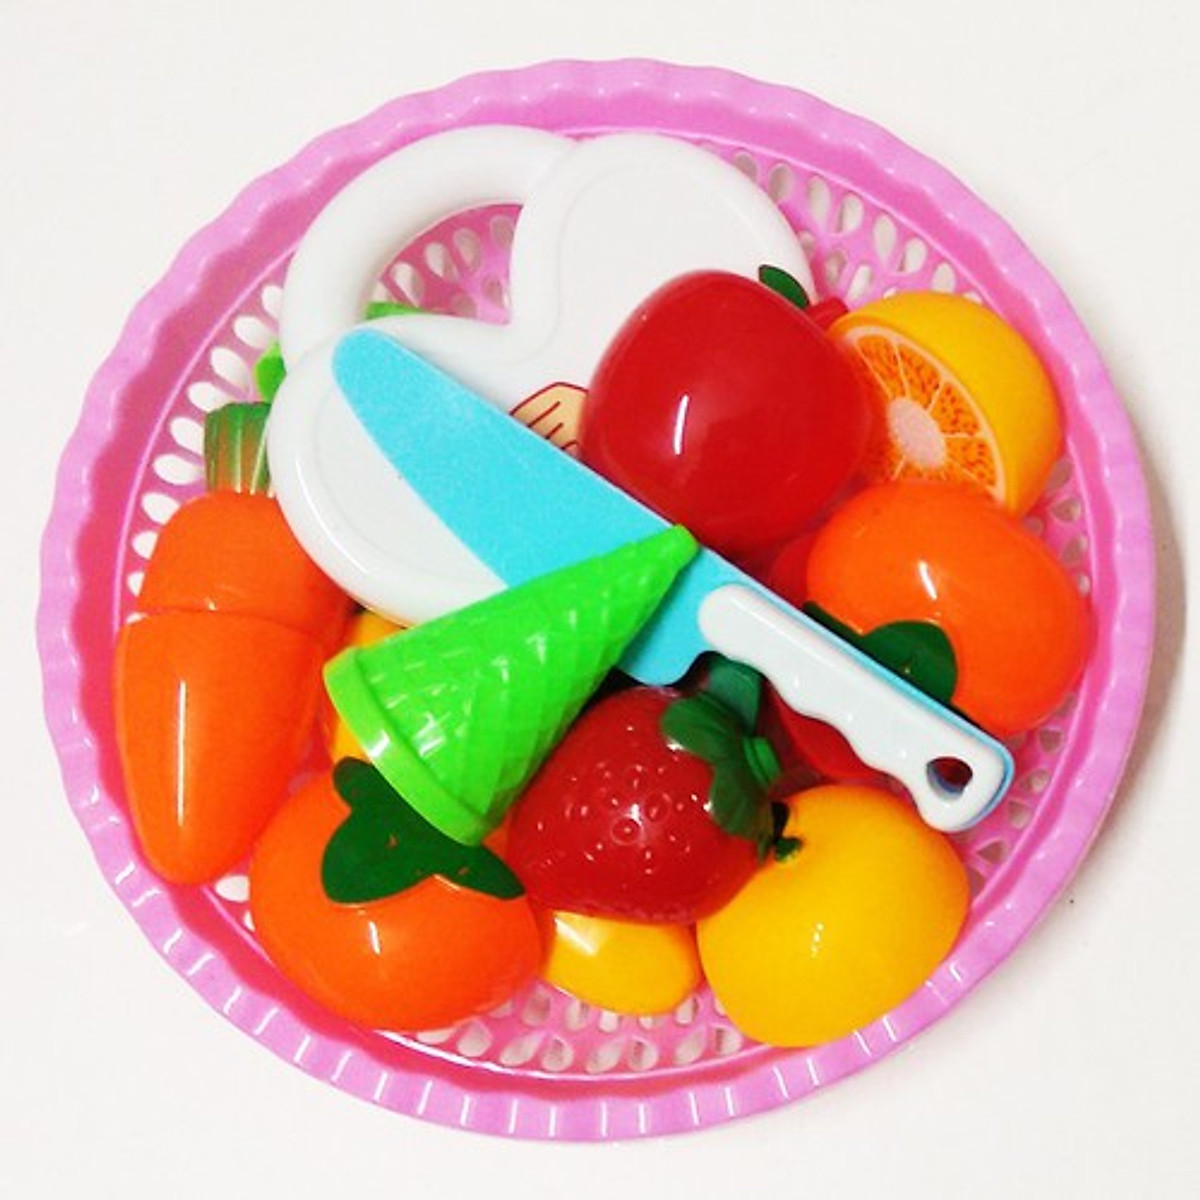 Túi đồ chơi cắt trái cây, hoa quả lắp ghép kèm rổ và thớt cho bé ( Tặng 01 khăn voan đại che bụi cho bé )